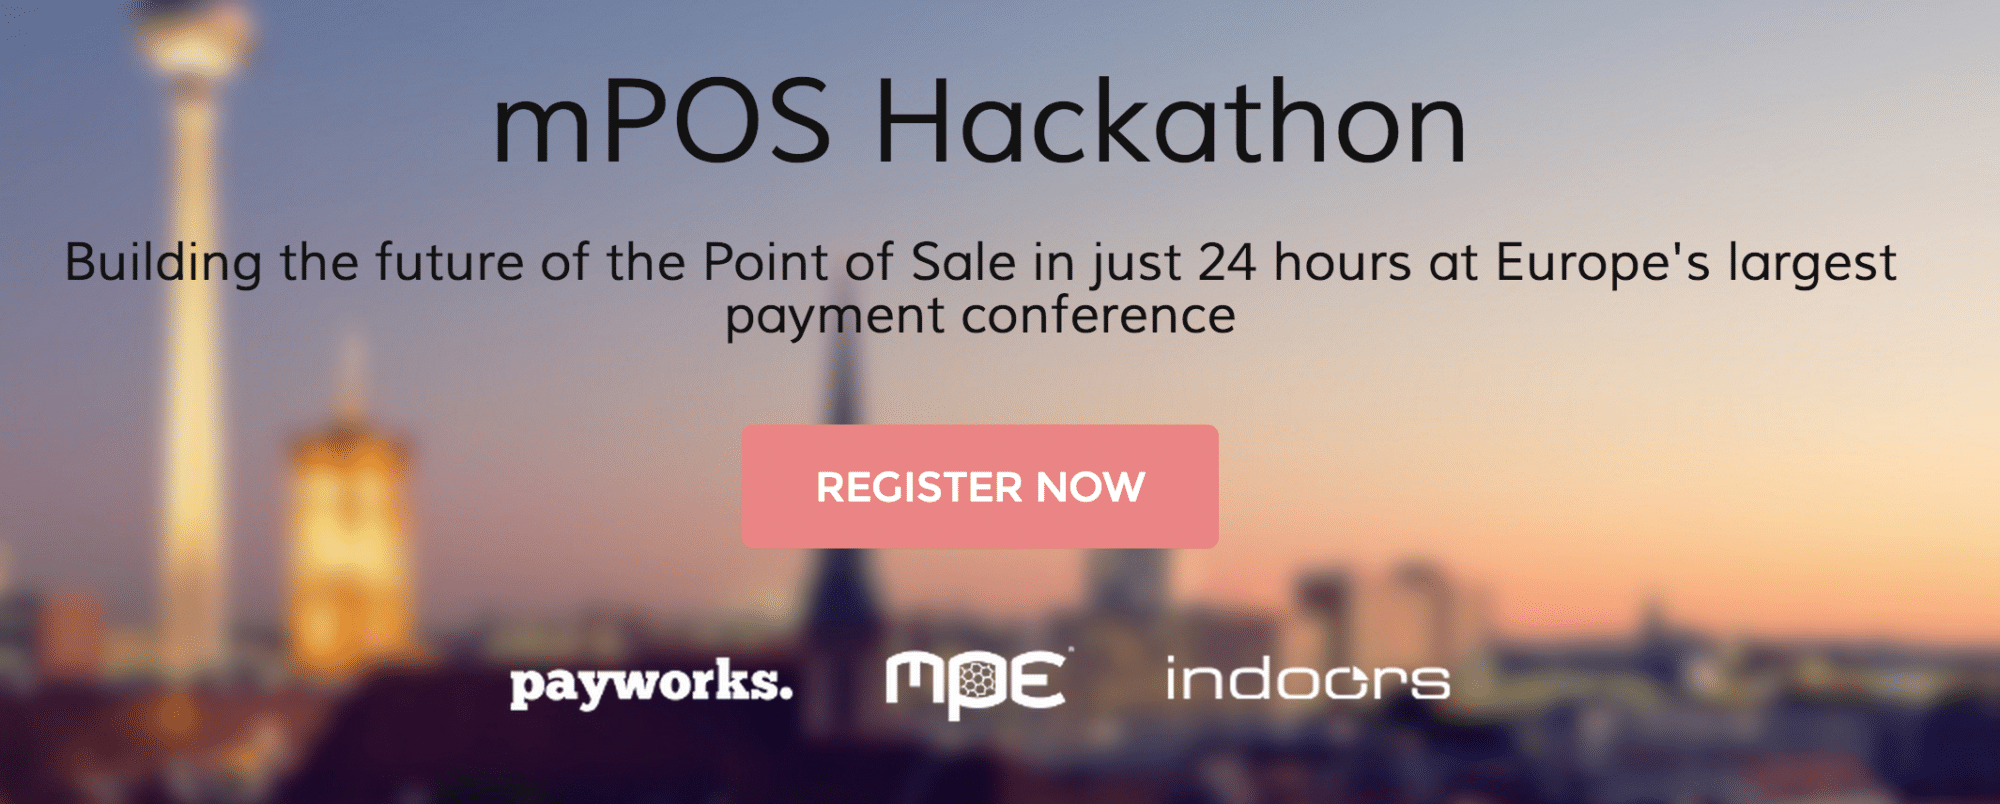 mPOS Hackathon